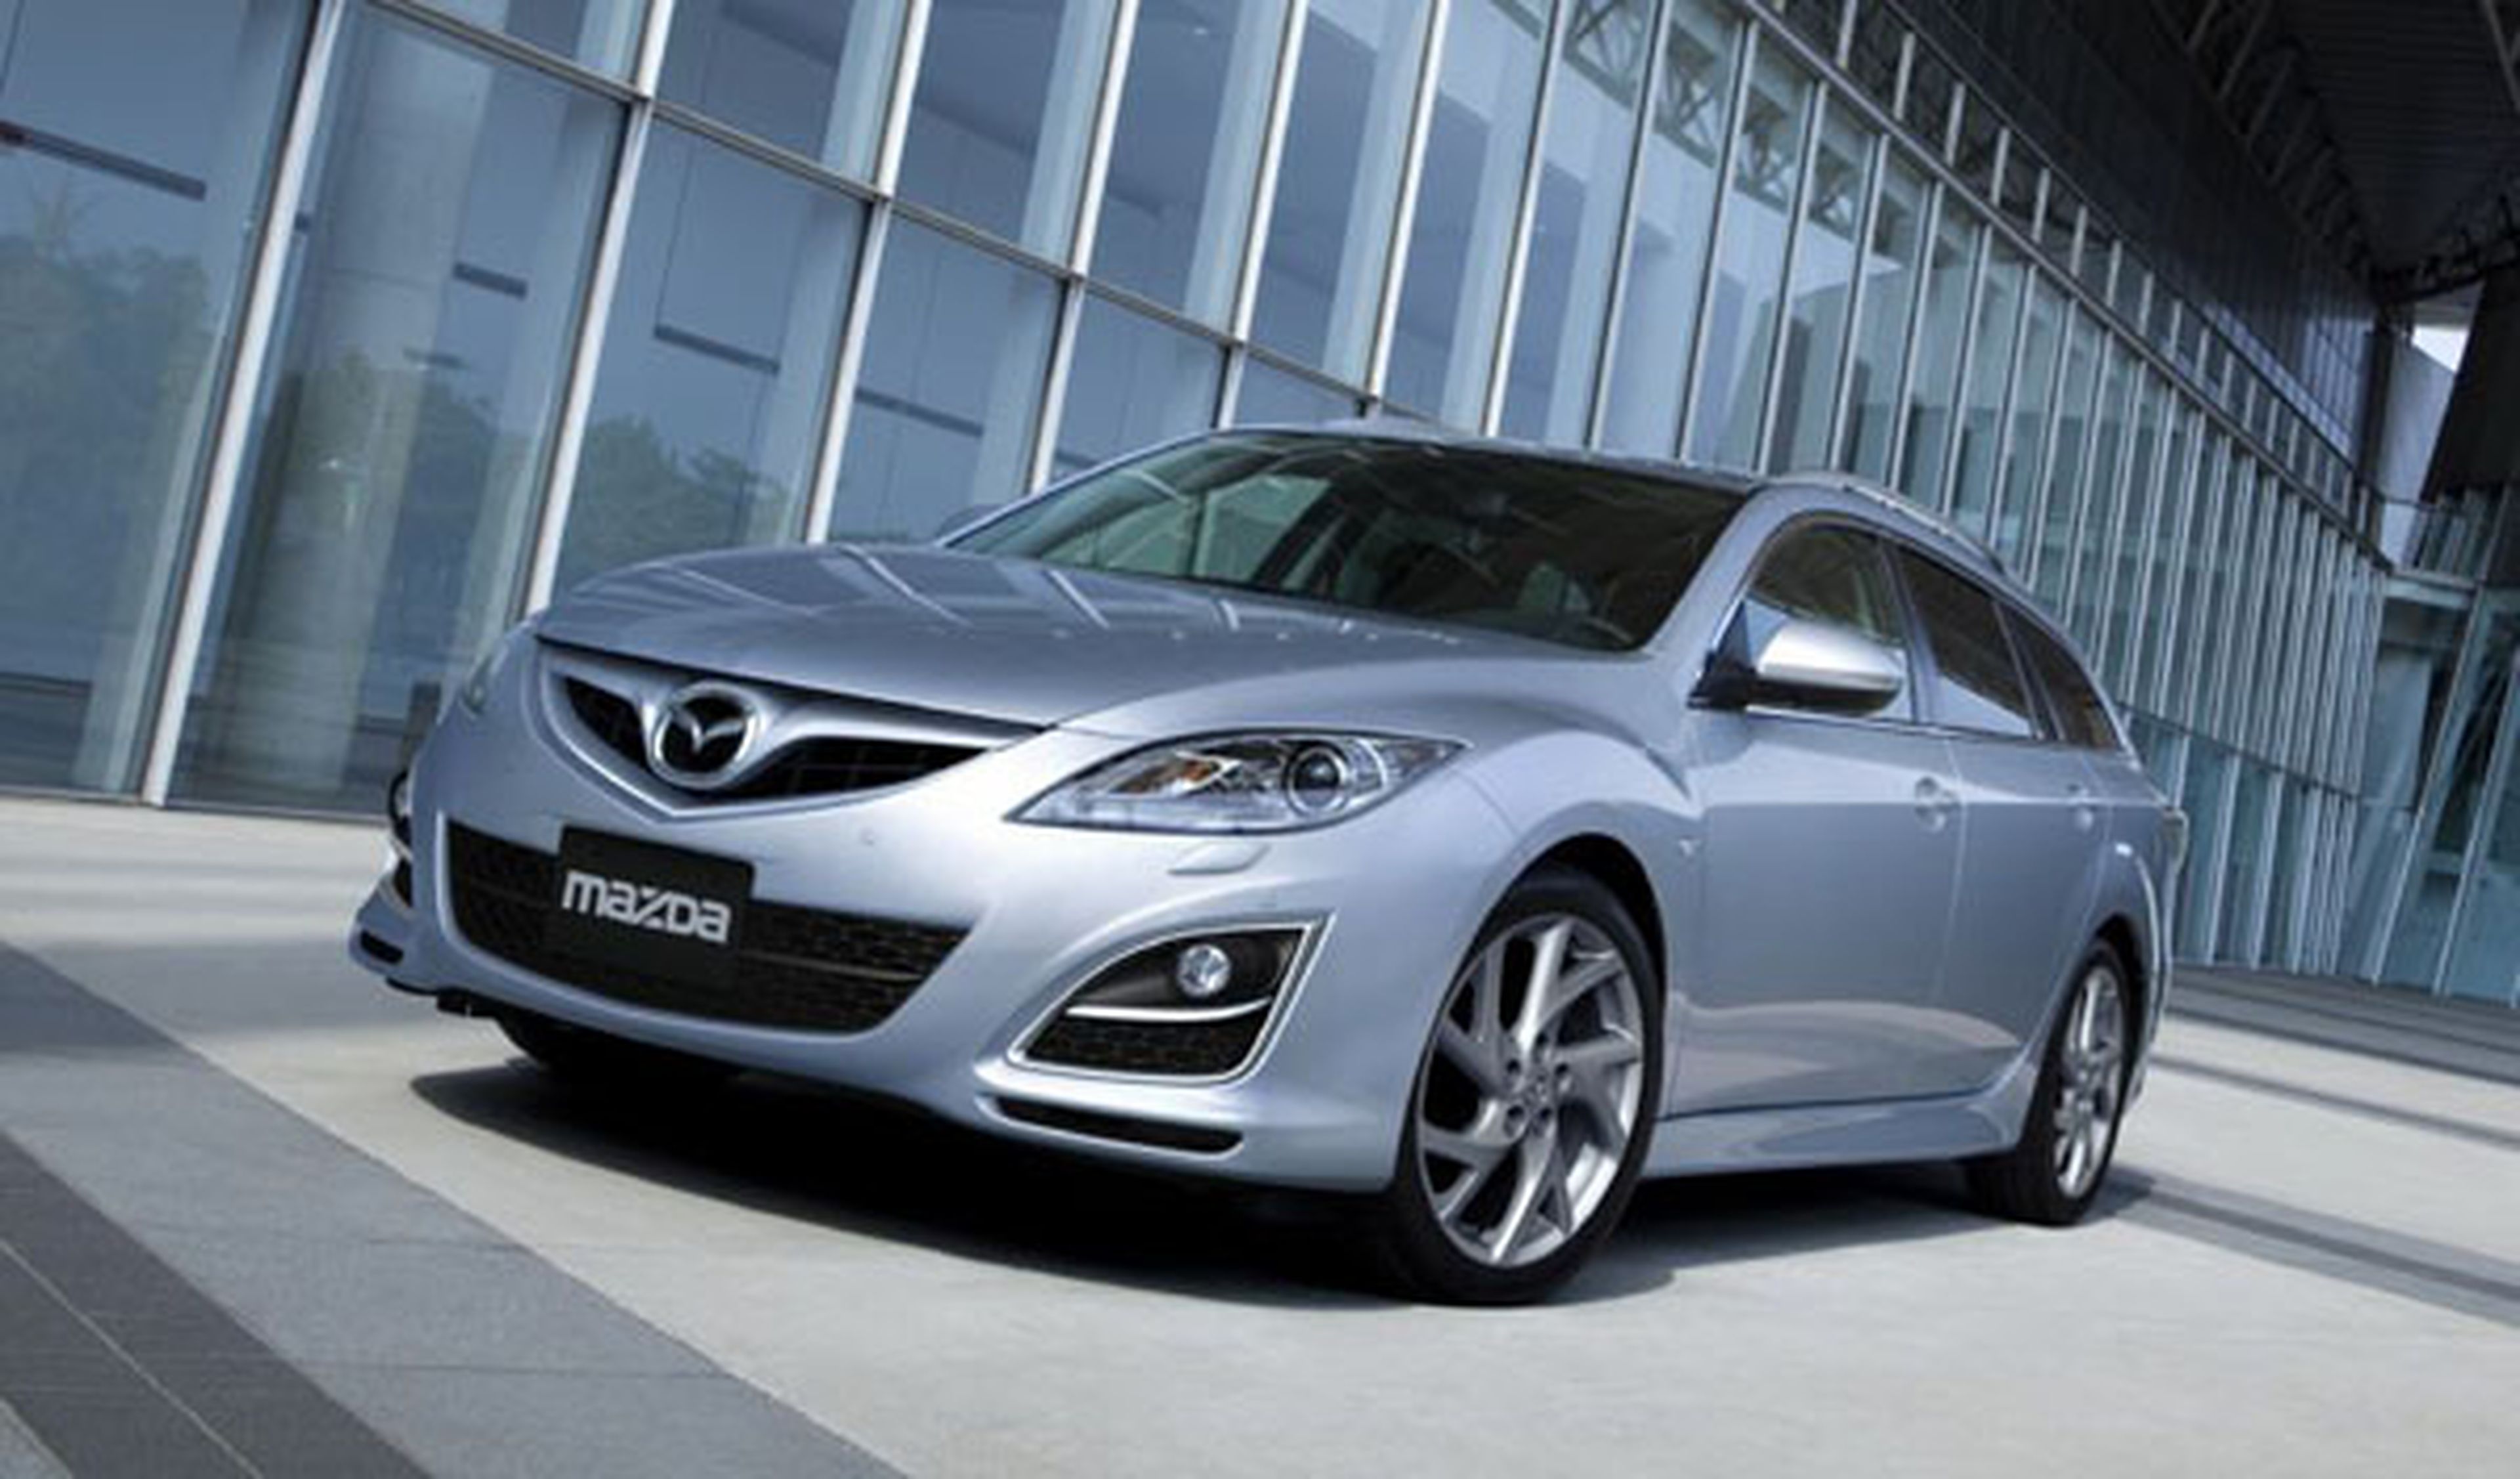 Fotos: El Mazda6 estrena versión